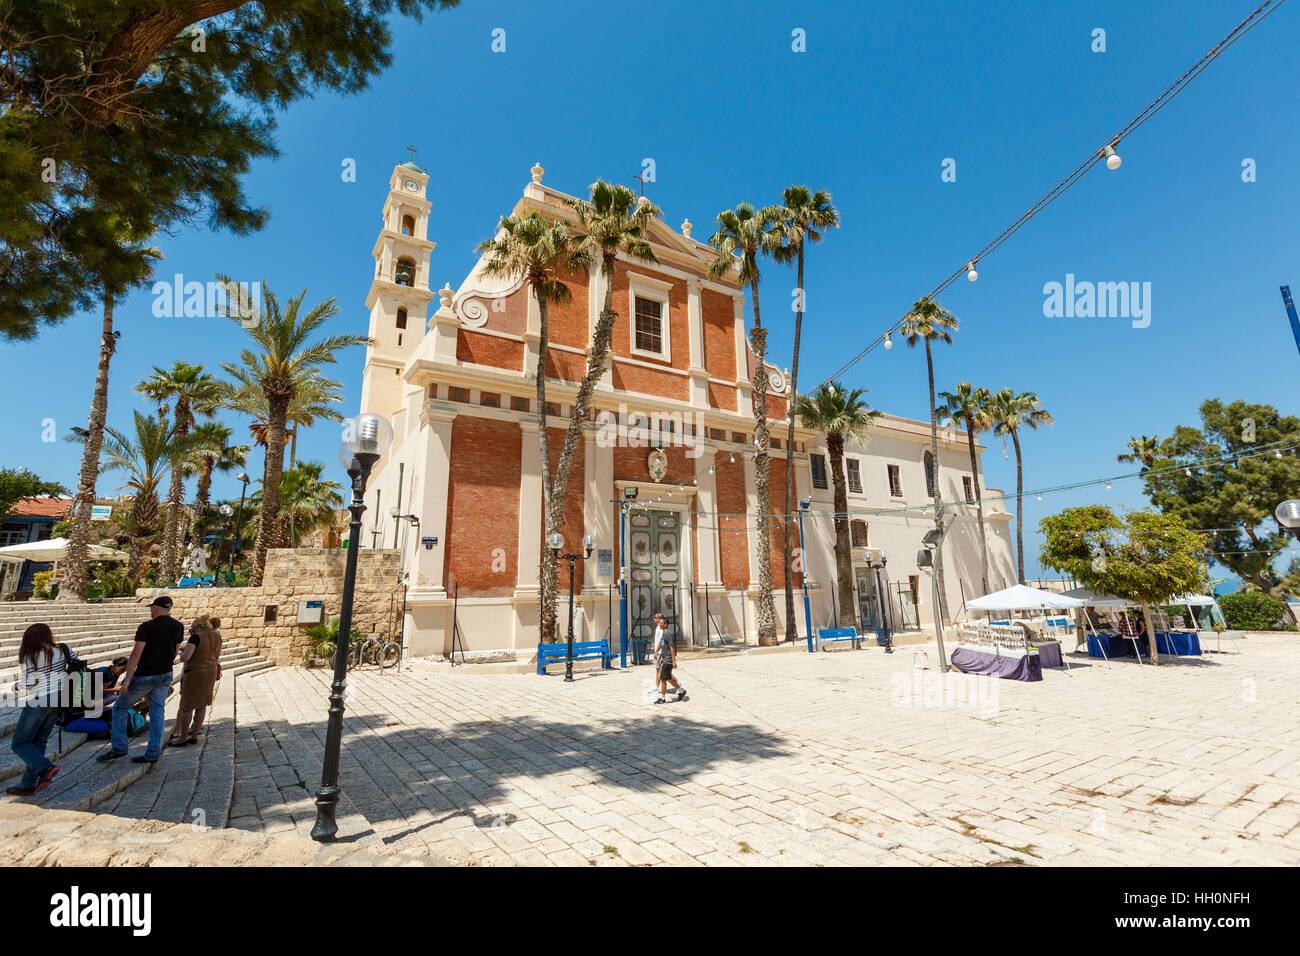 JAFFA, Tel Aviv, Israele - Aprile 4, 2016: persone su di una piazza presso la chiesa di San Pietro in Vecchia Jaffa, Israele. La chiesa francescana è stata costruita nel 1654 ho Foto Stock